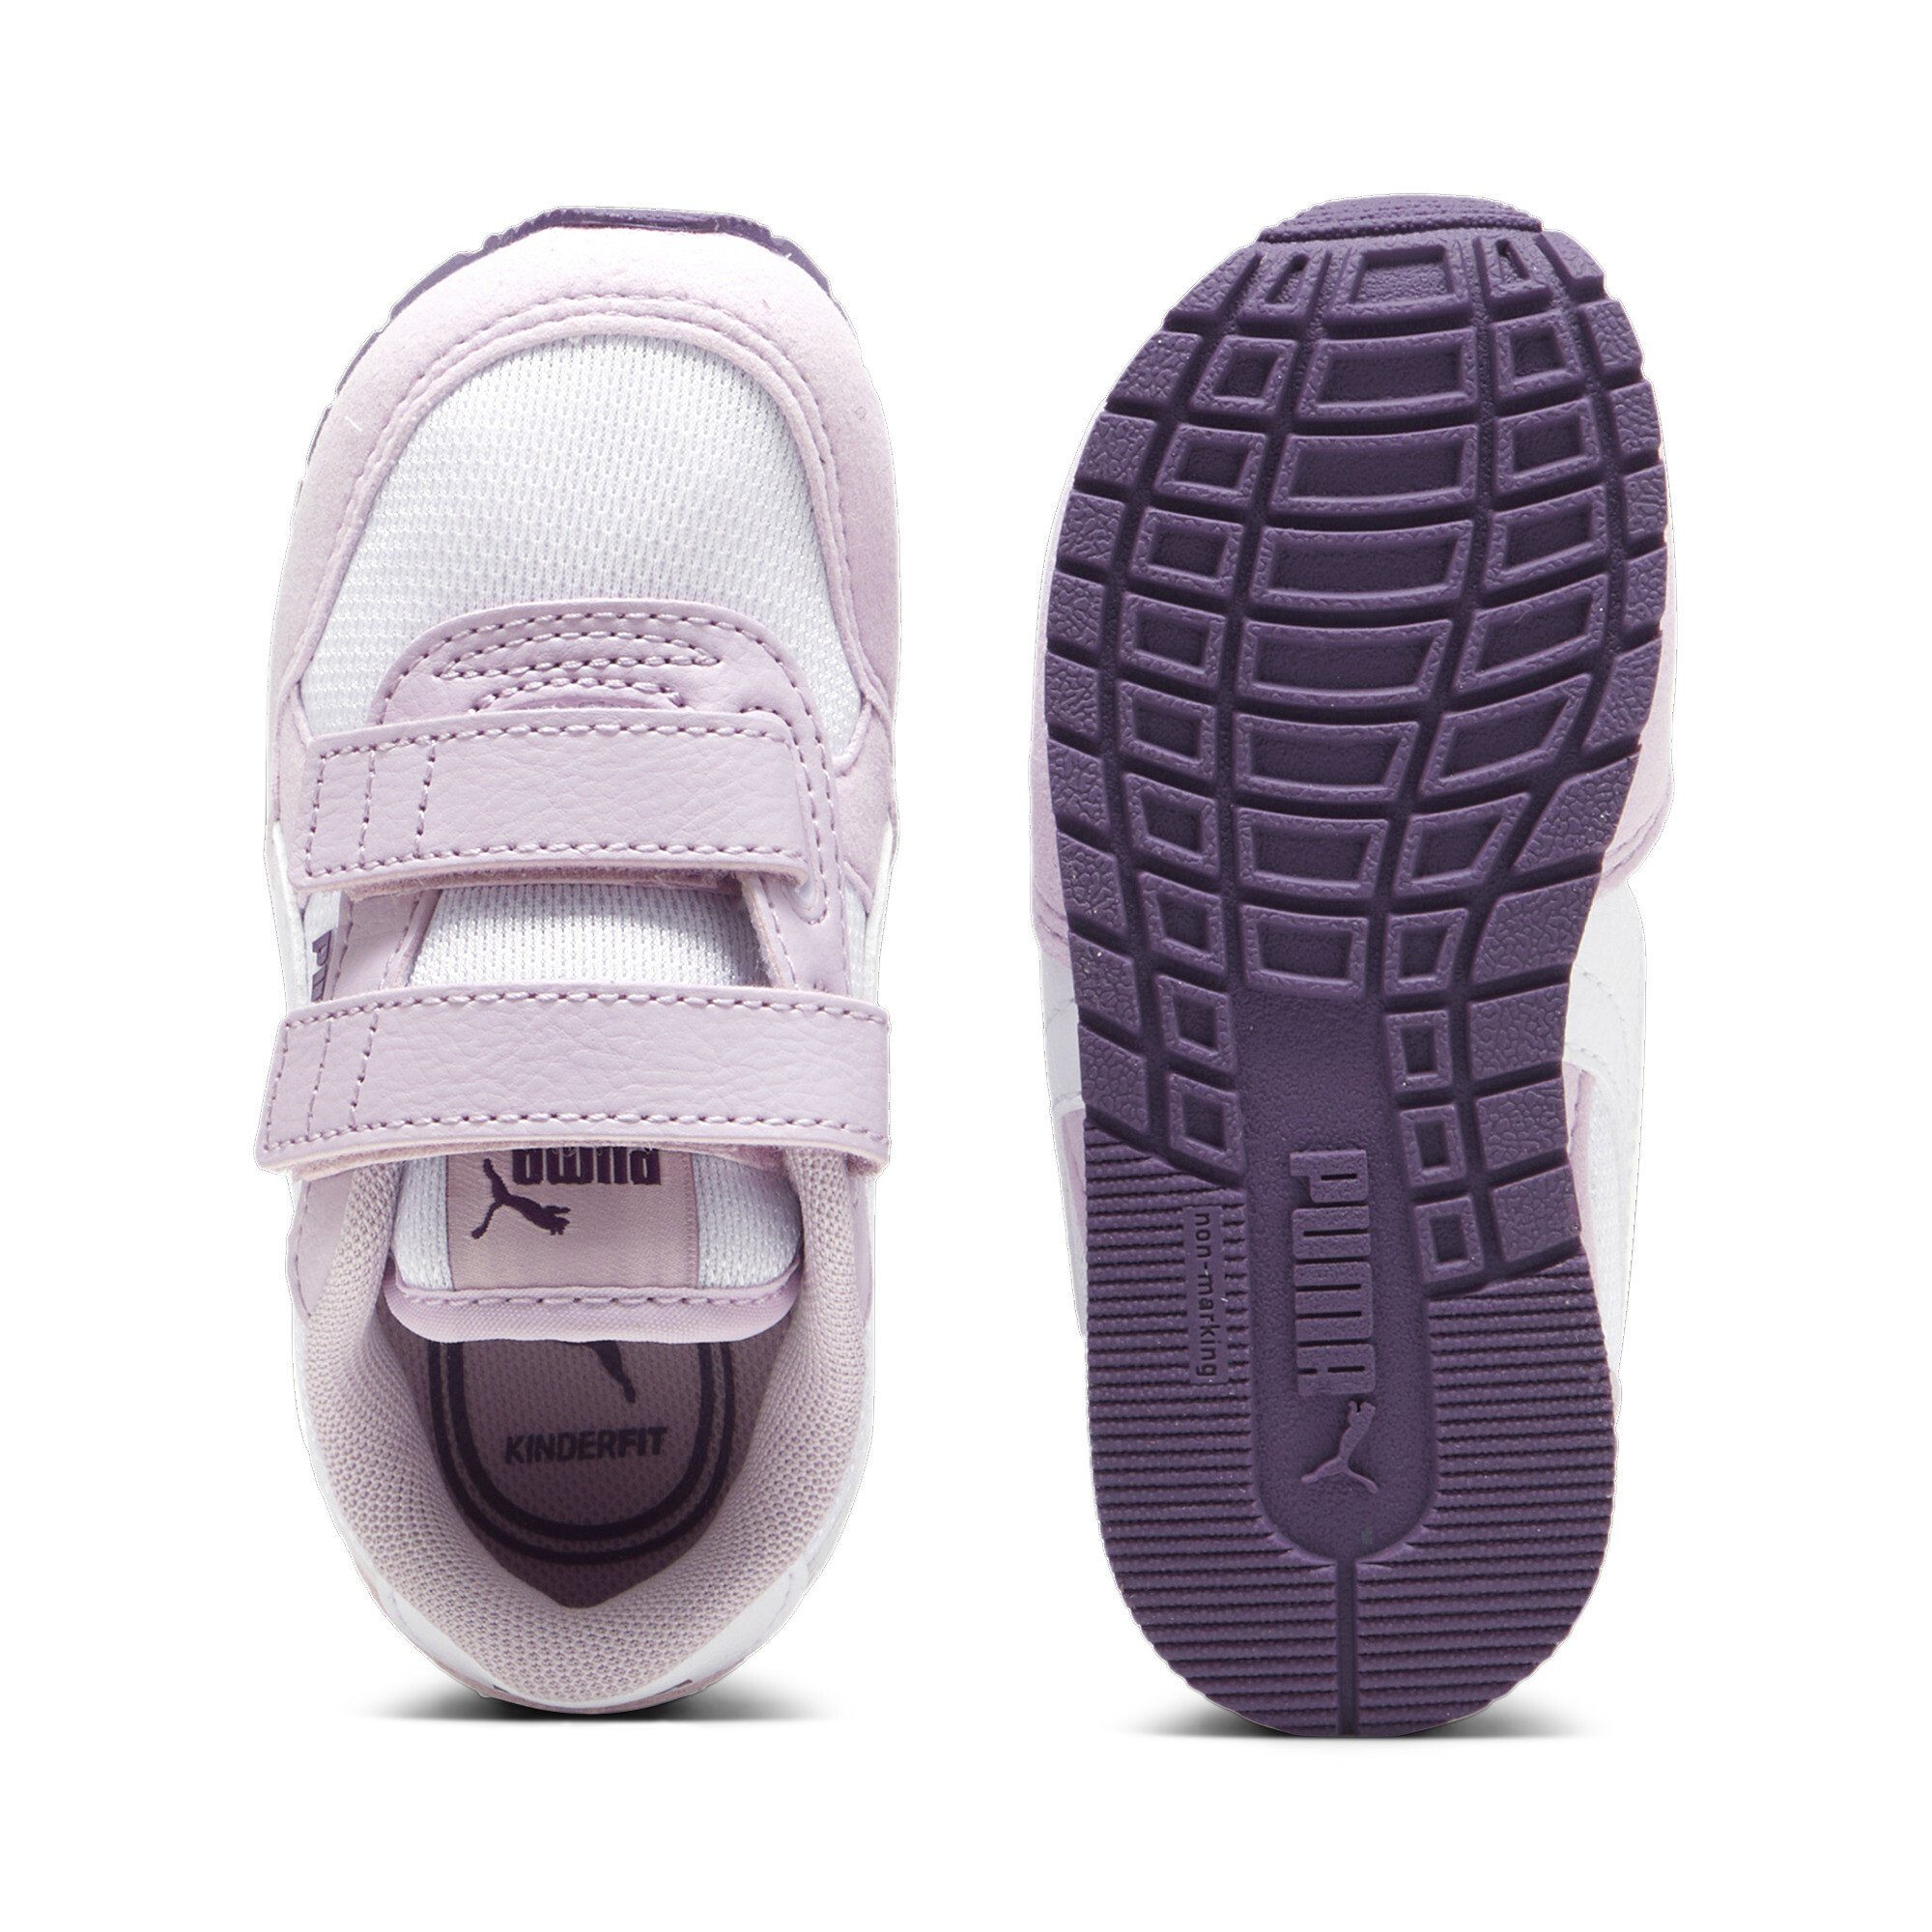 PUMA ST Runner v3 Mesh White Kinder Berry Sneakers Crushed Purple Mist Grape V Sneaker